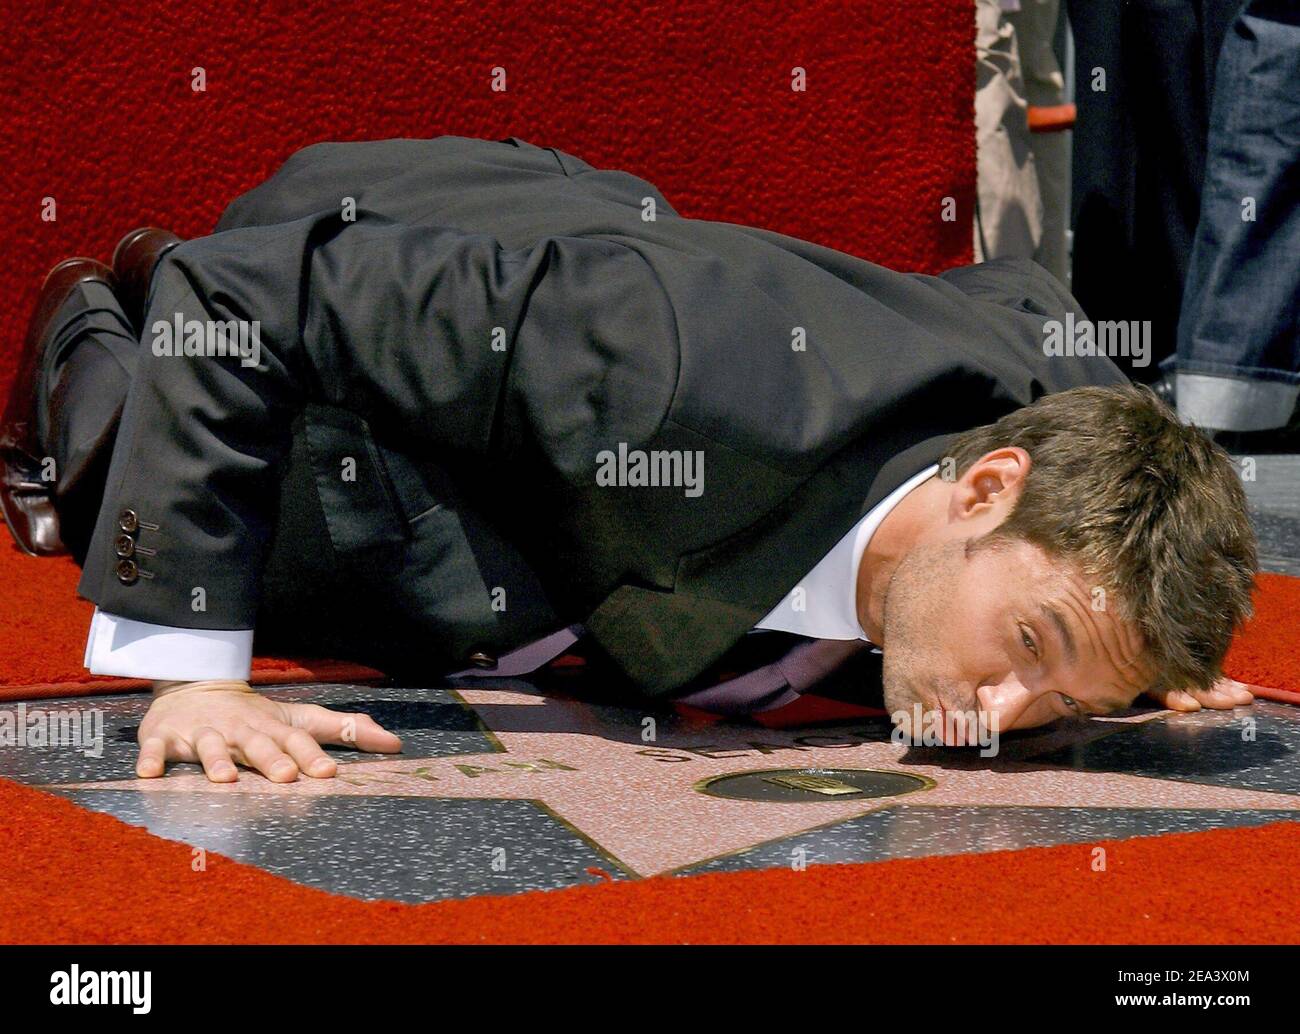 Ryan Seacrest è insignito della 2,82 82 82esima stella sulla Hollywood Walk of Fame di fronte al Kodak Theatre. Los Angeles, 20 aprile 2005. Foto di Lionel Hahn/ABACA. Foto Stock